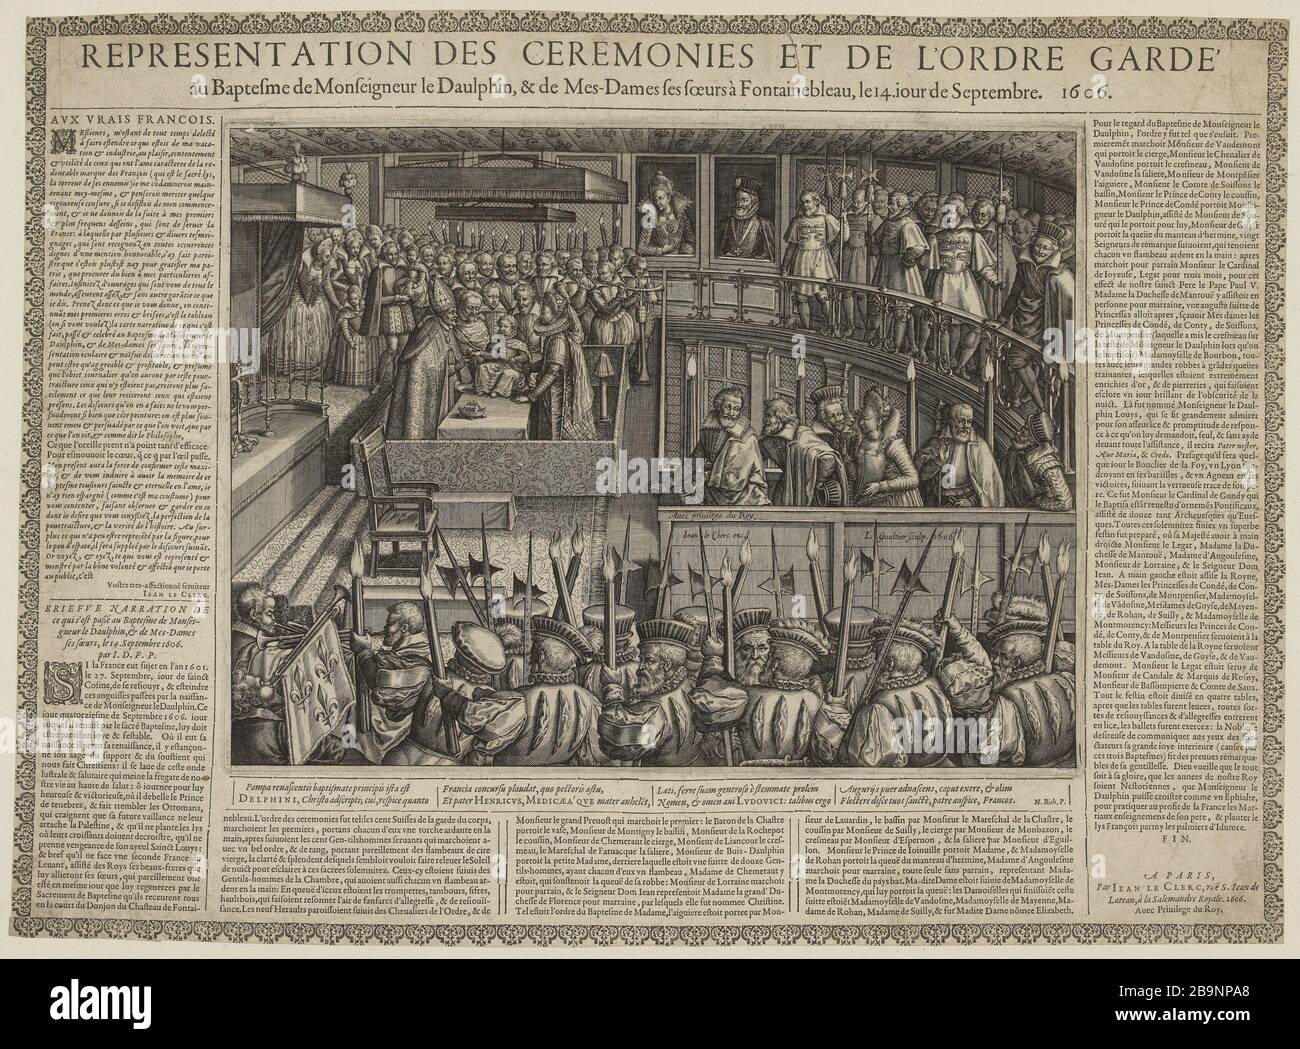 Representation of Ceremonies and the Order of the Guard baptism of the Dauphin. (B. N. I. F. F., T. IV, No. 81) Léonard Gaultier (1561-1641). 'Représentation des Cérémonies et de l'Ordre de Garde au baptême du Dauphin. (B. N. I. F. F., T. IV, n°81)'. Burin. 1606. Musée des Beaux-Arts de la Ville de Paris, Petit Palais. Stock Photo